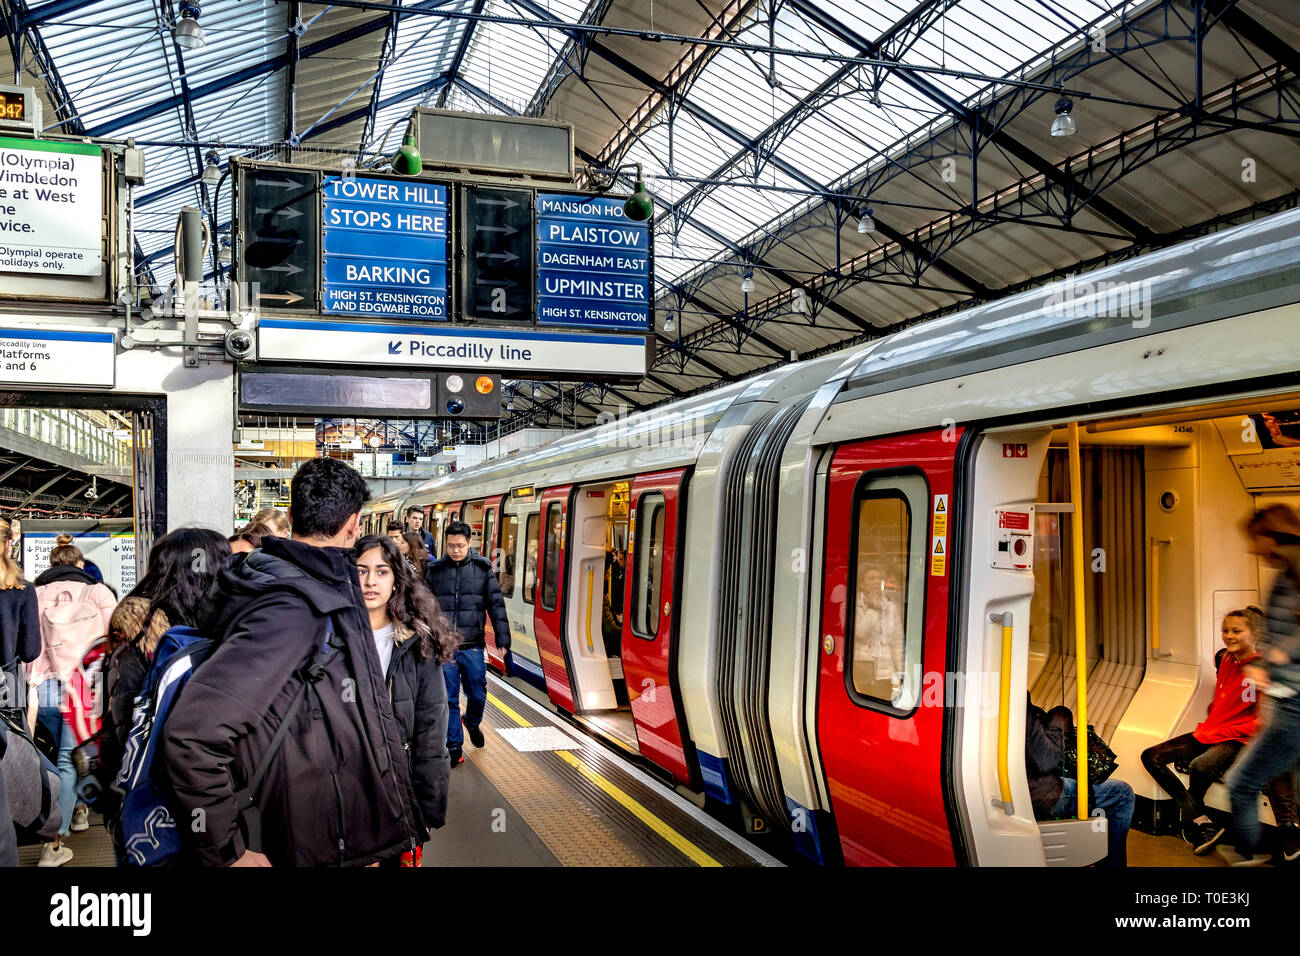 Passagers à bord d'un train de métro S7 stock District Line à la gare Earl's court du sud-ouest de Londres, Londres, Royaume-Uni Banque D'Images